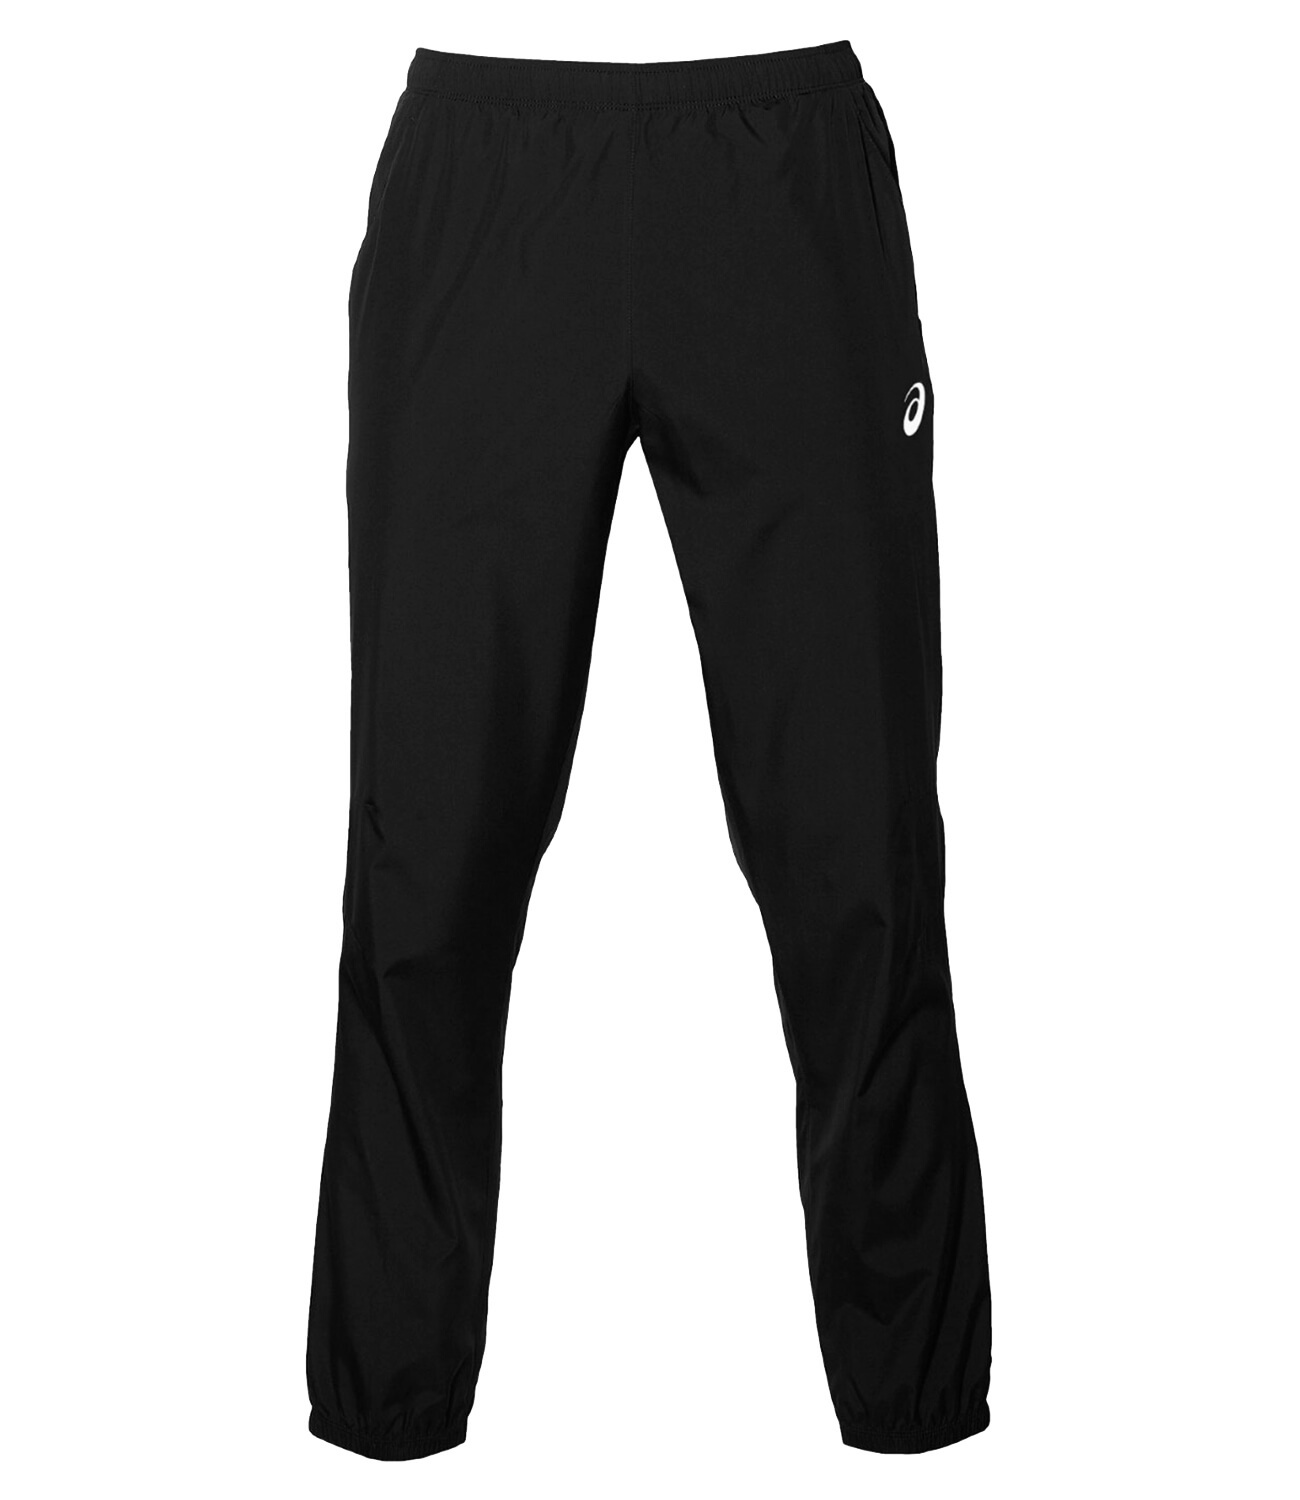 Мужские спортивные брюки Asics Silver Woven Pant 2011A038 001 купить винтернет- магазине Five-sport.ru